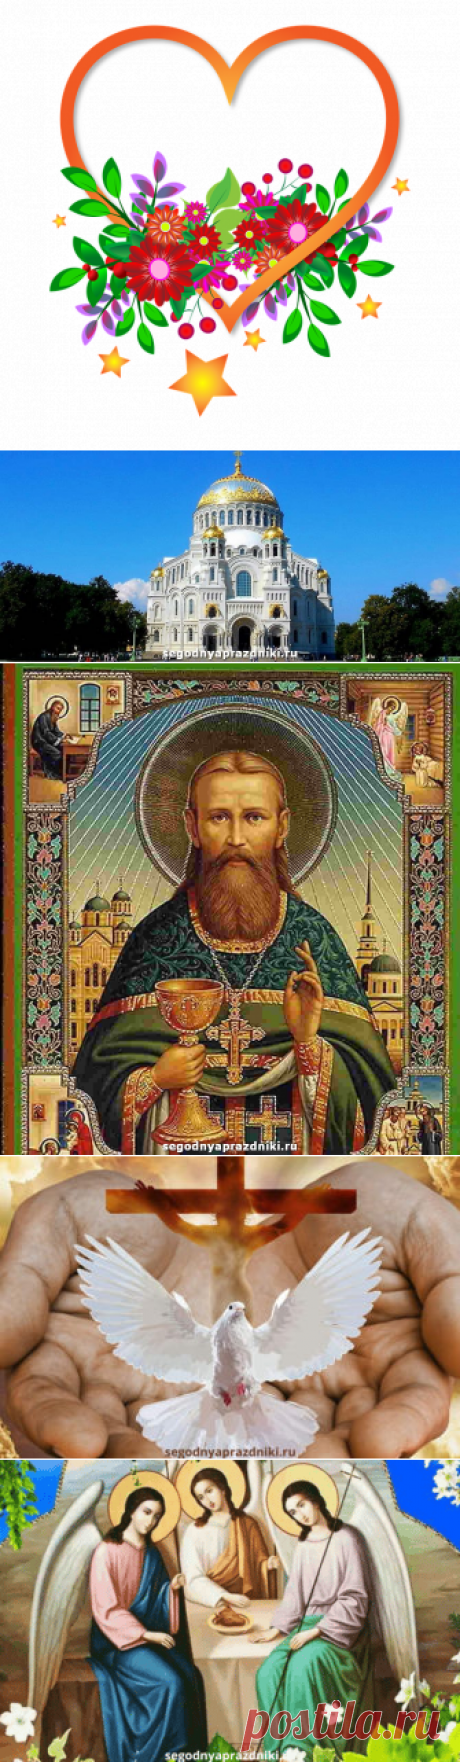 Святой Иоанн Кронштадтский. День памяти святого 14 июня